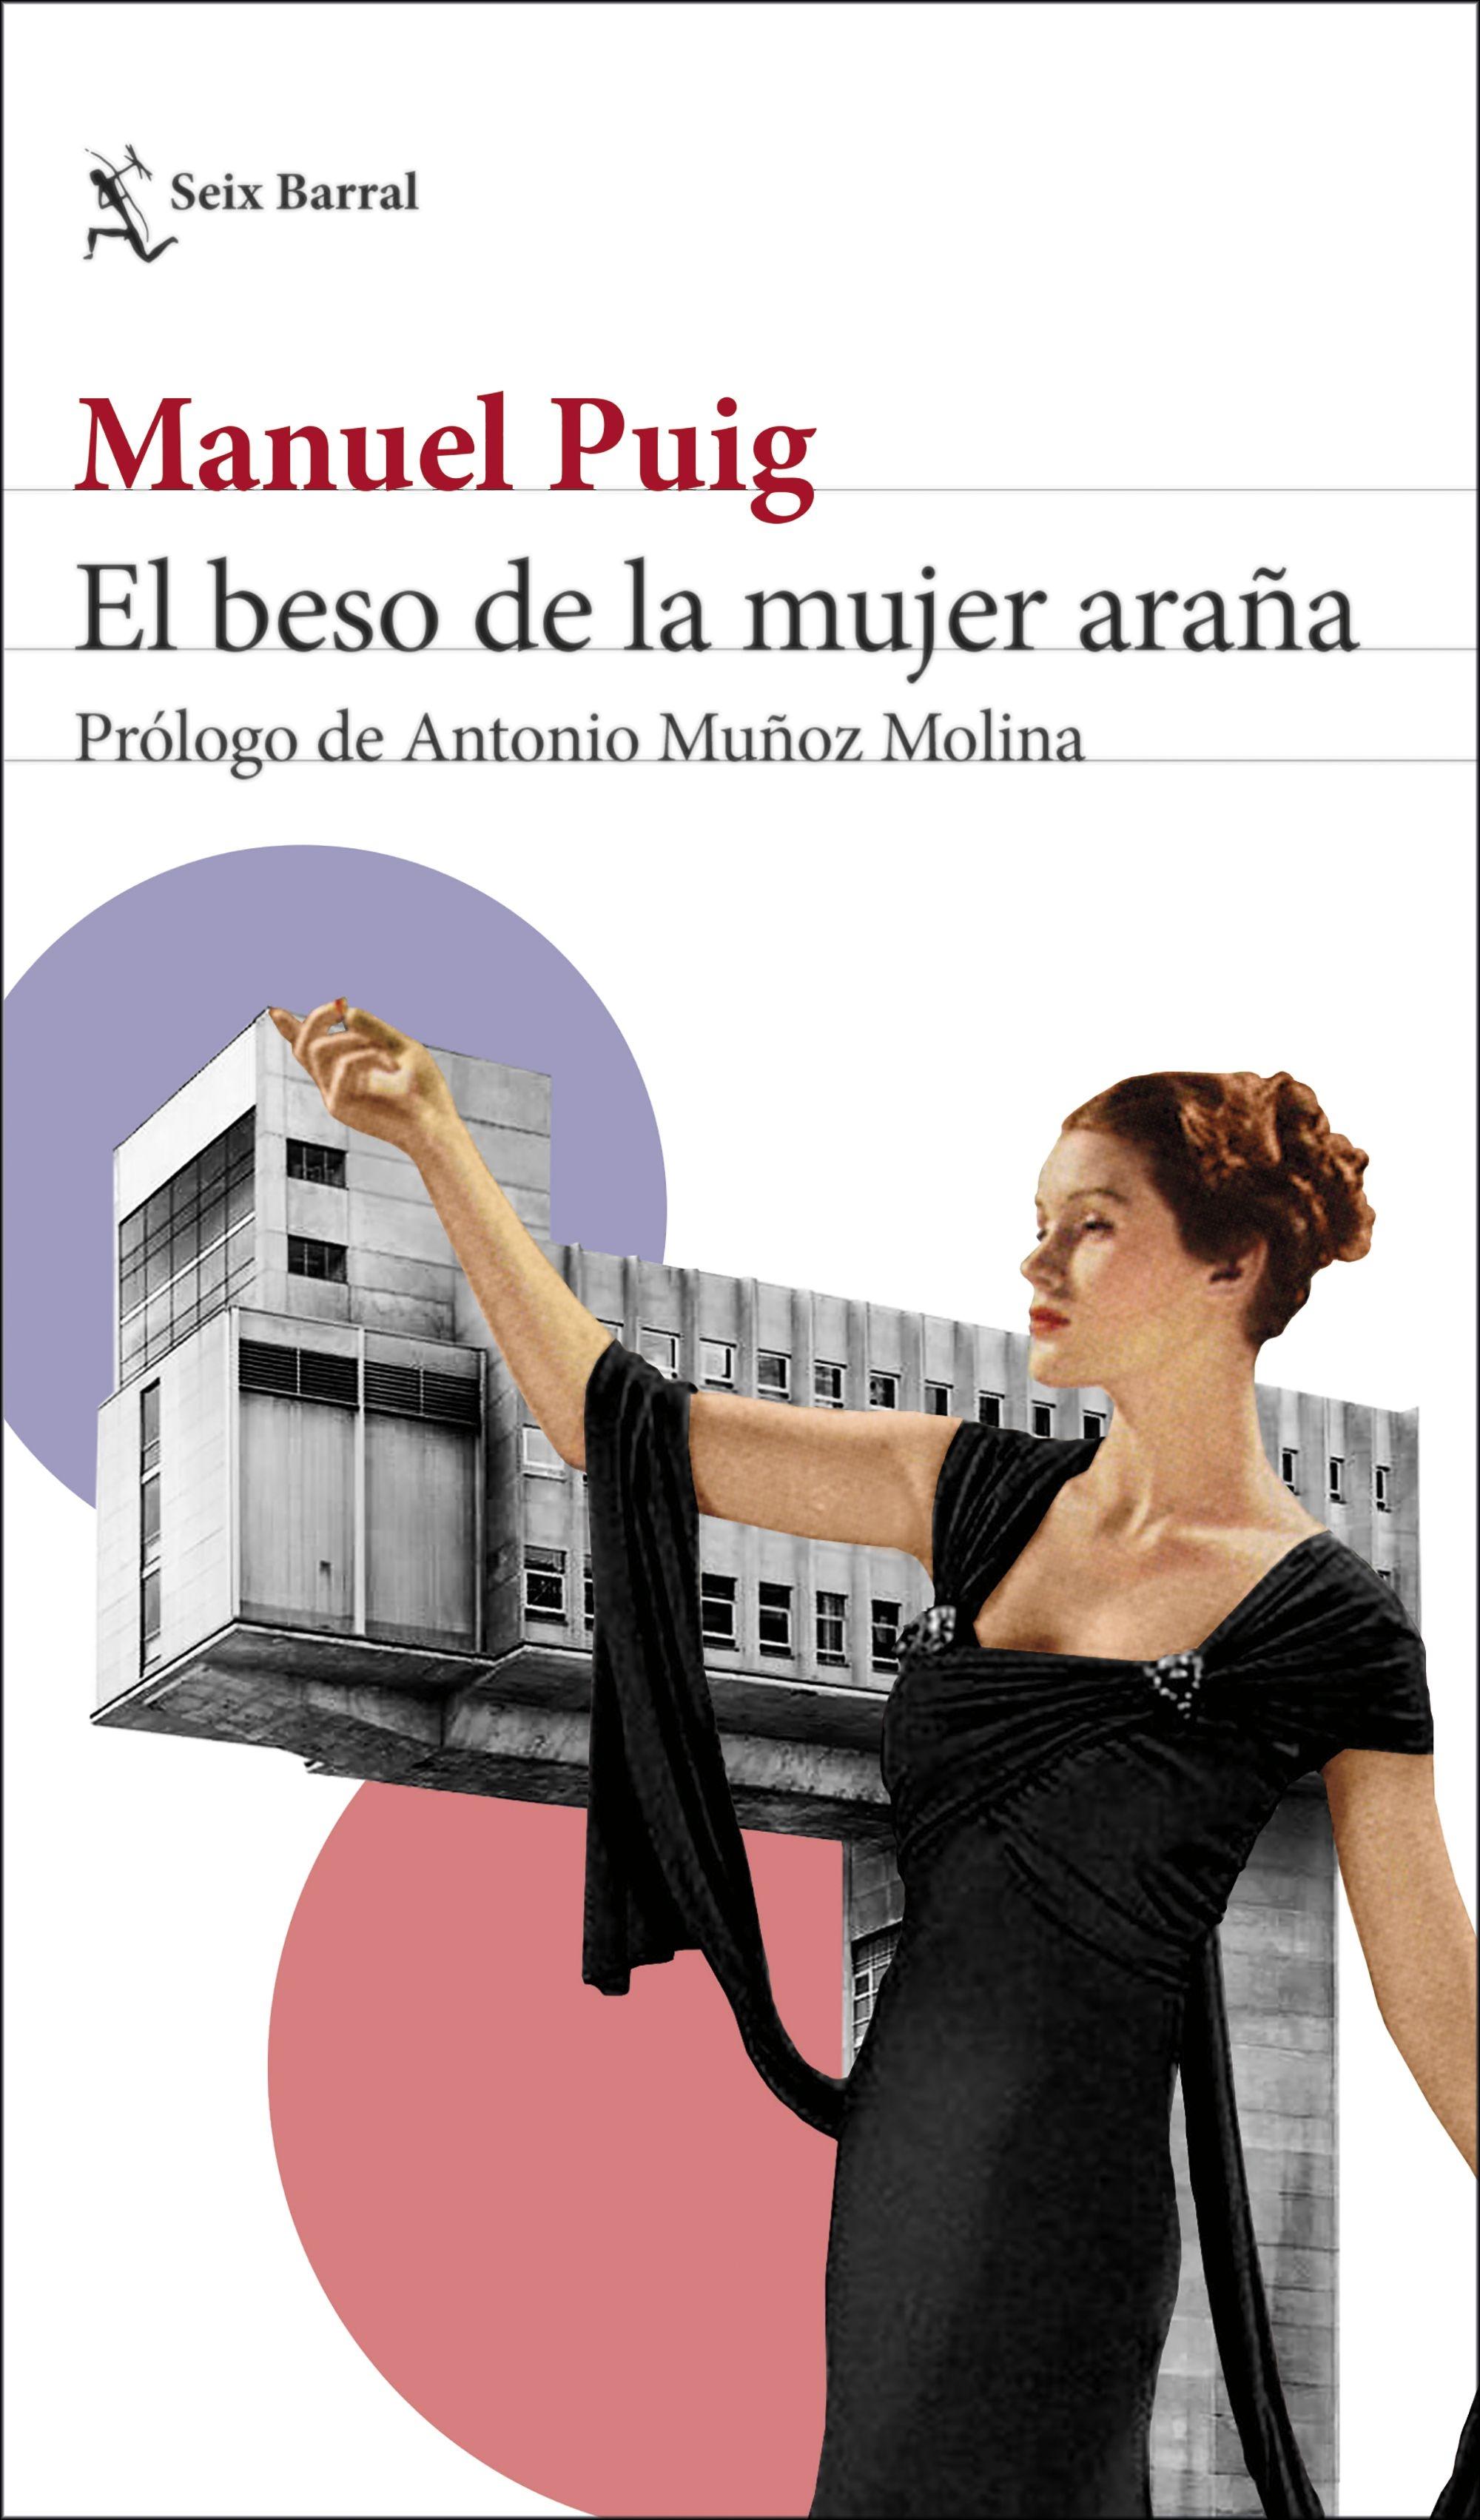 El beso de la mujer araña "Prólogo de Antonio Muñoz Molina"